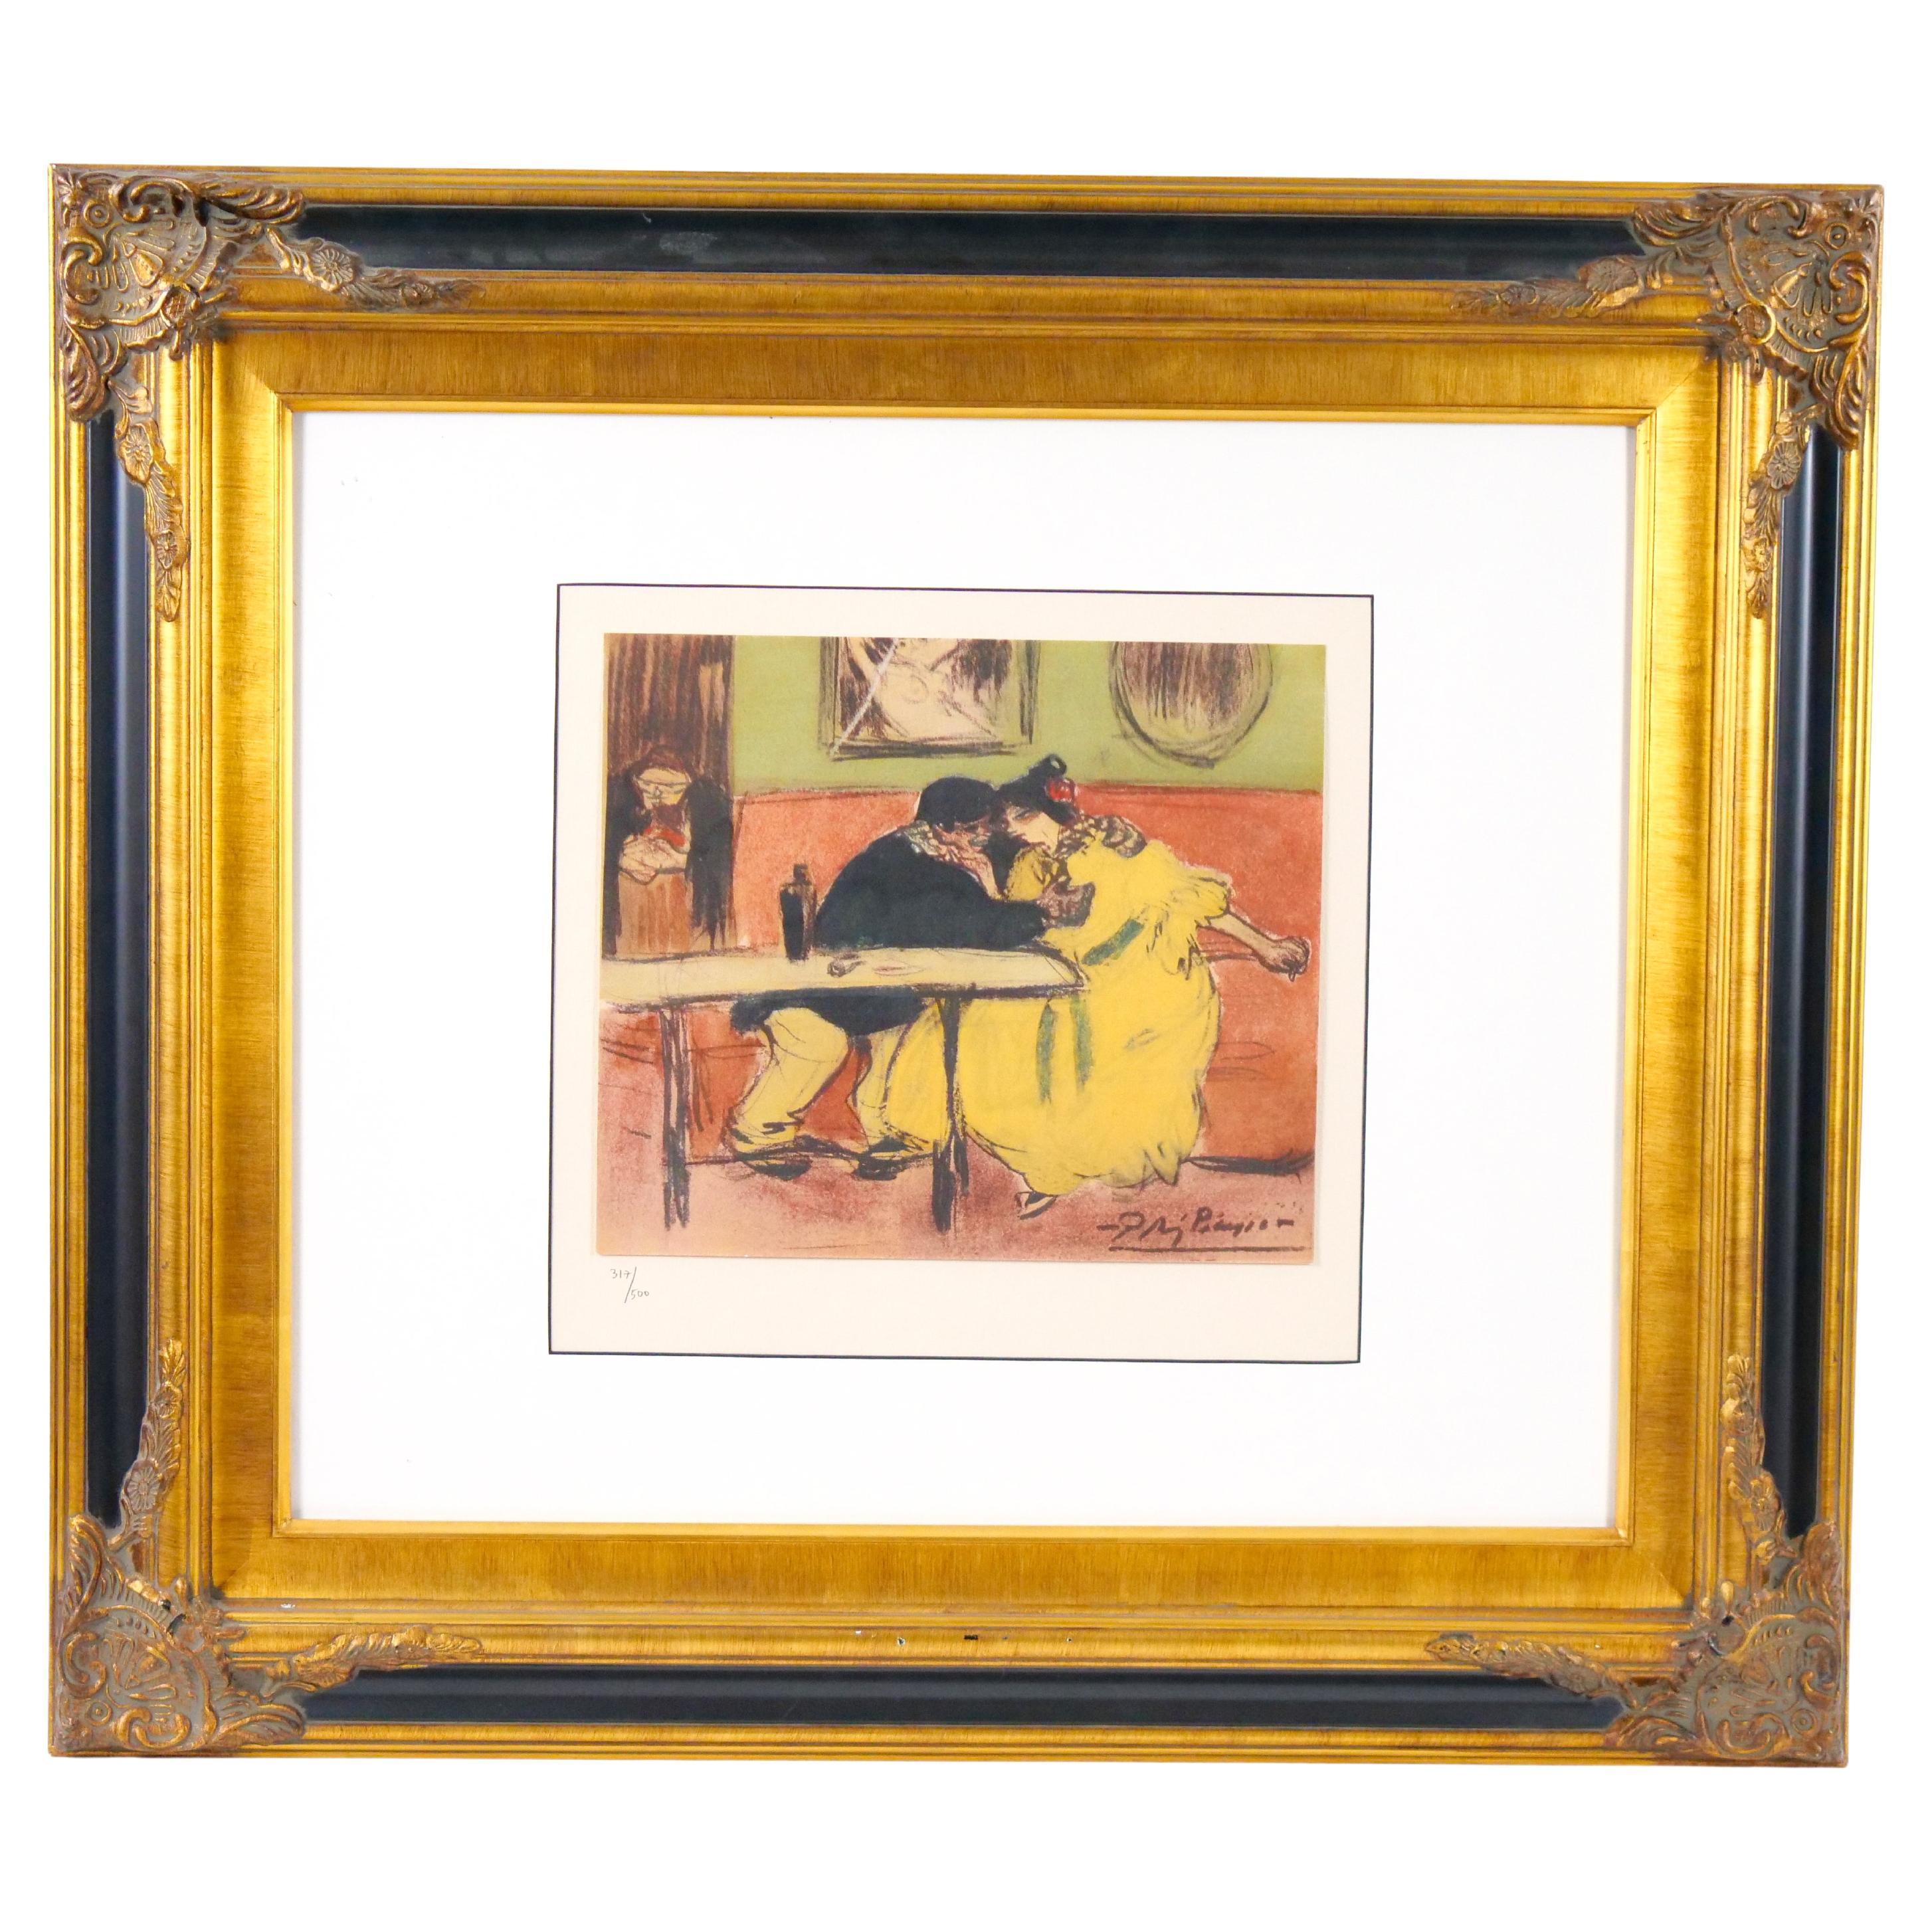 Cadre en bois doré - Lithographie de Pablo Picasso - « Le devian »